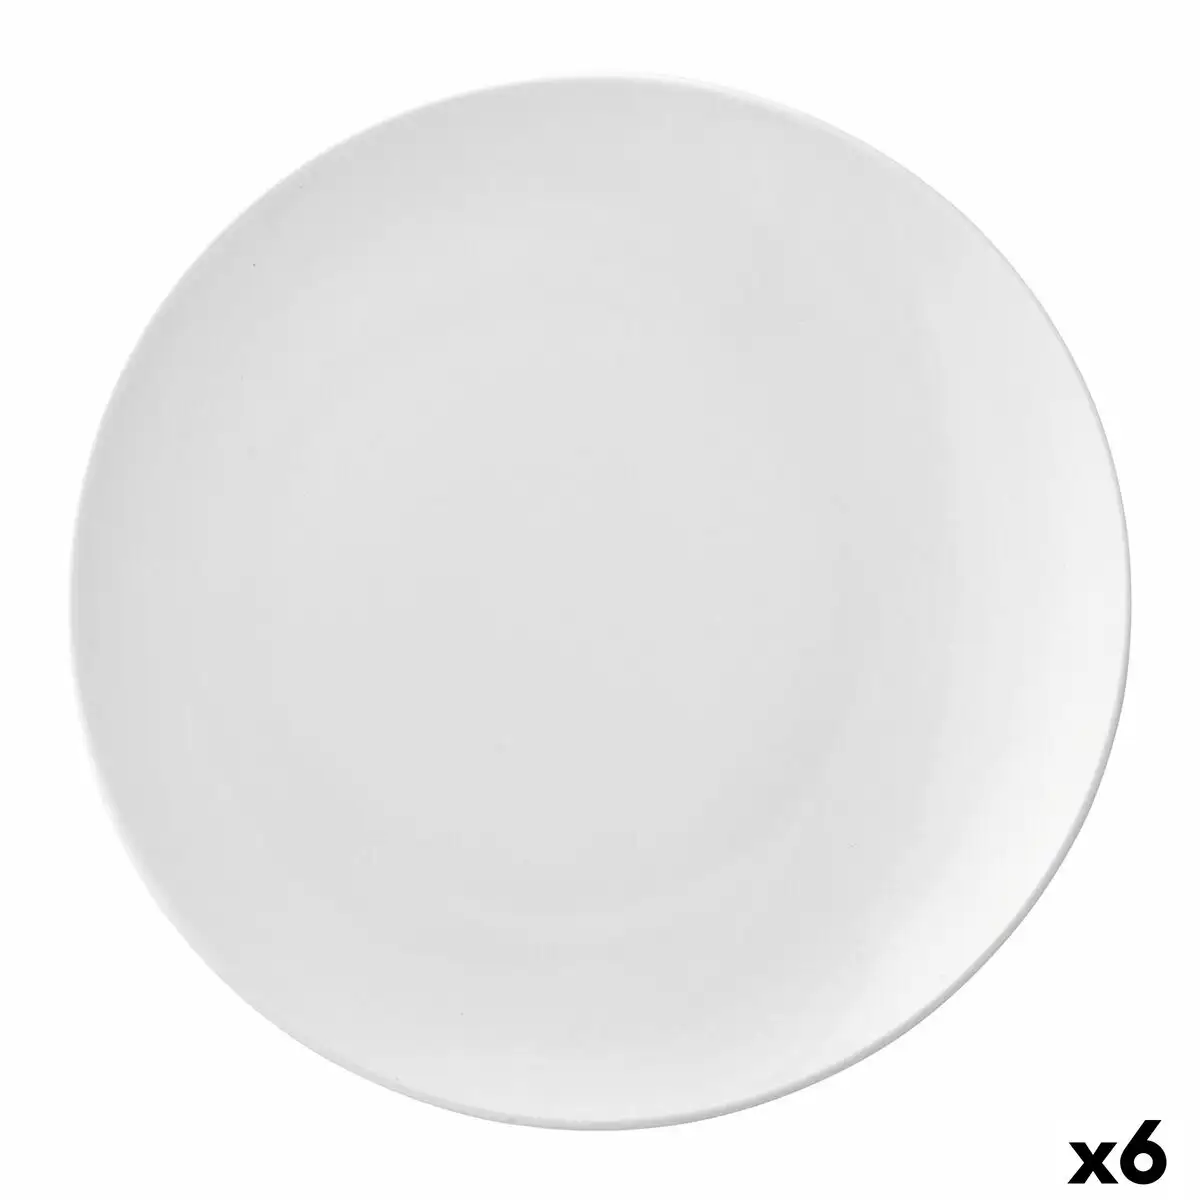 Assiette plate ariane vital coupe ceramique blanc o 29 cm 6 unites _4316. DIAYTAR SENEGAL - L'Art de Choisir, l'Art de S'émerveiller. Explorez notre boutique en ligne et choisissez des articles qui éveillent votre sens de l'émerveillement.